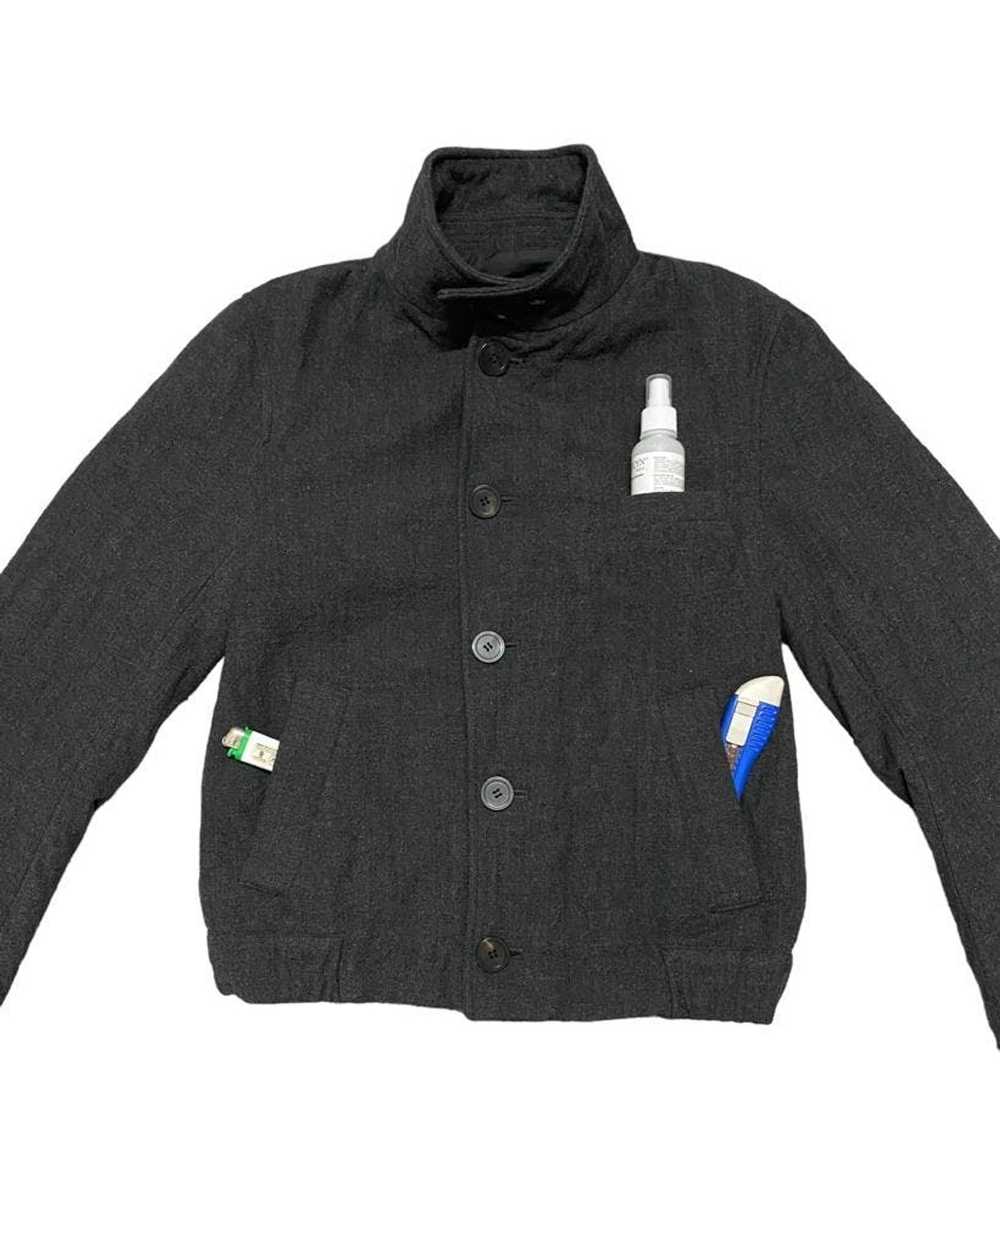 Wooyoungmi Wooyoungmi wool bombers jacket style - image 4